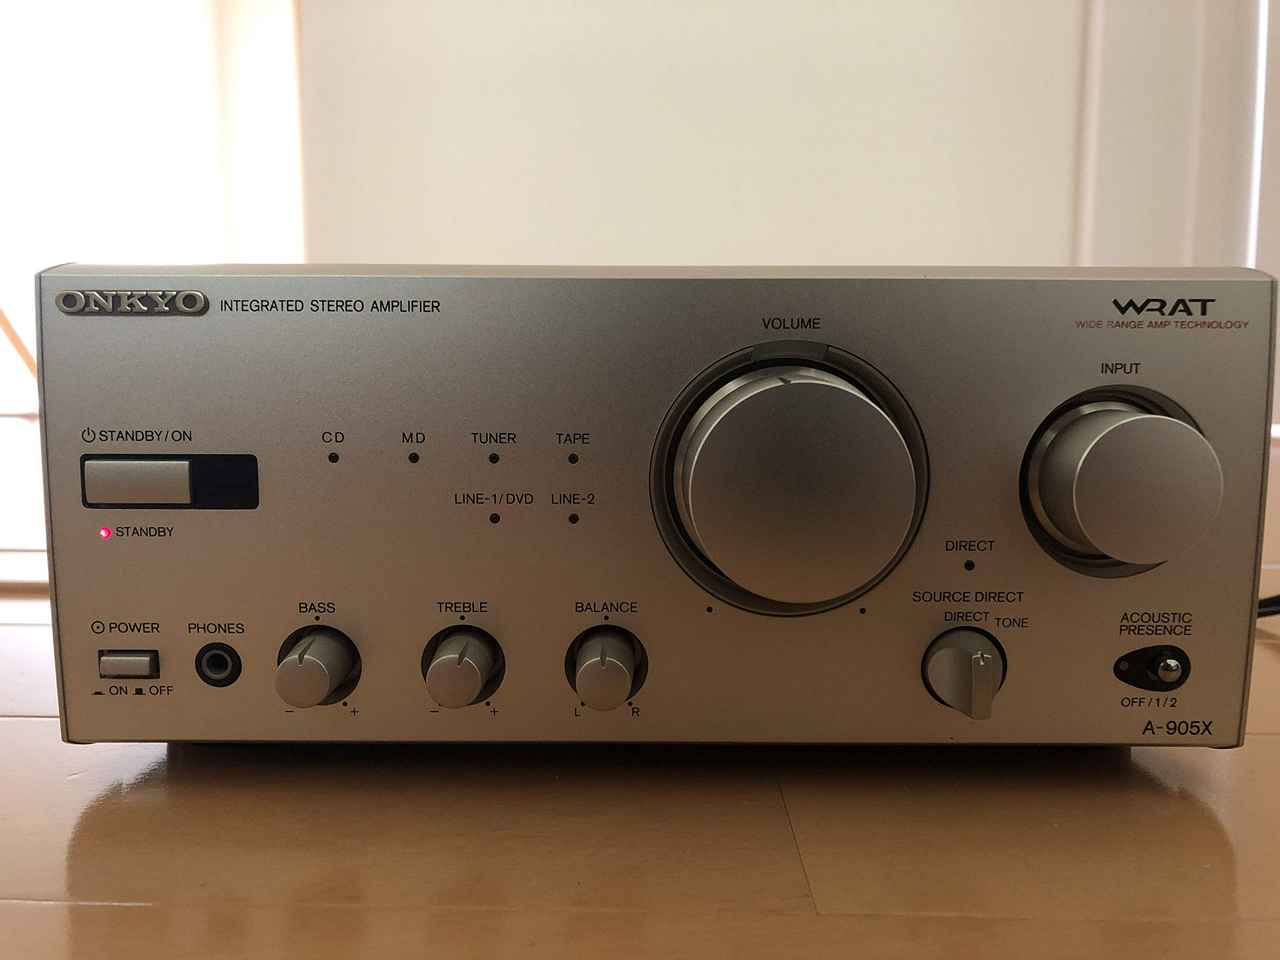 ONKYO Onkyo INTEC205 A-905X pre-main amplifier 